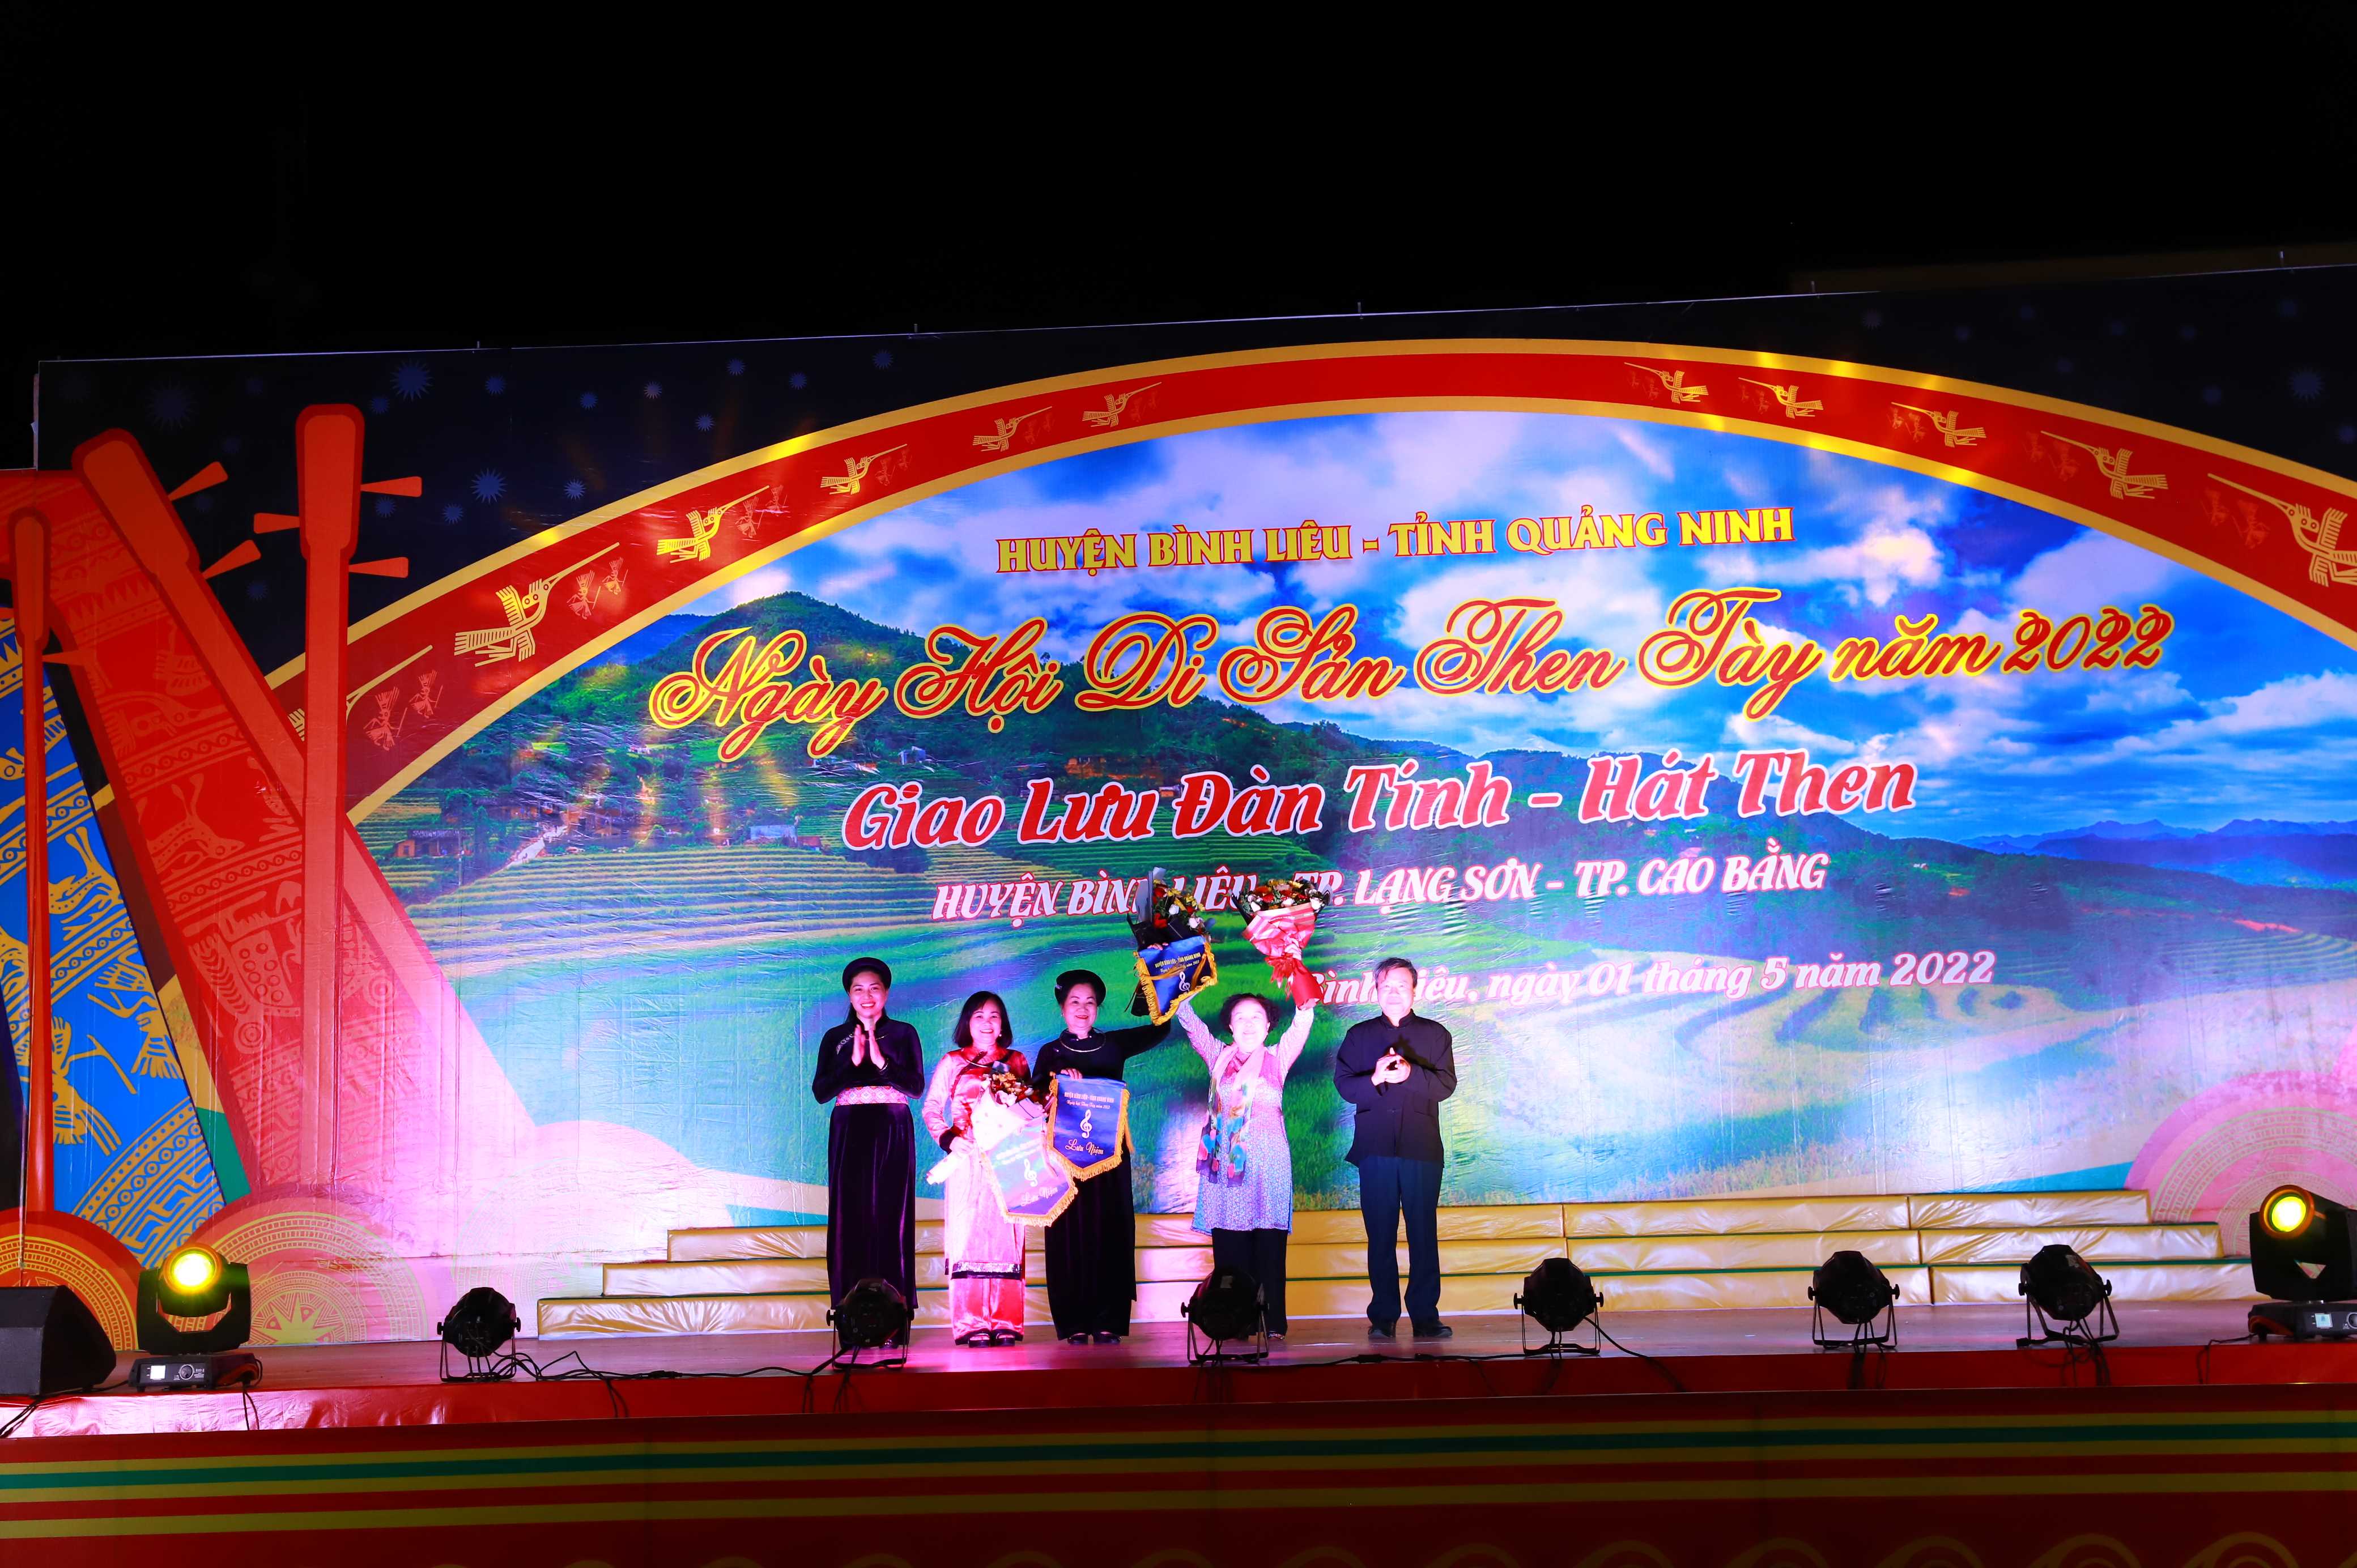 Ngày hội di sản Then Tày năm 2022, giao lưu đàn Tính – hát Then huyện Bình Liêu – TP. Lạng Sơn – TP. Cao Bằng